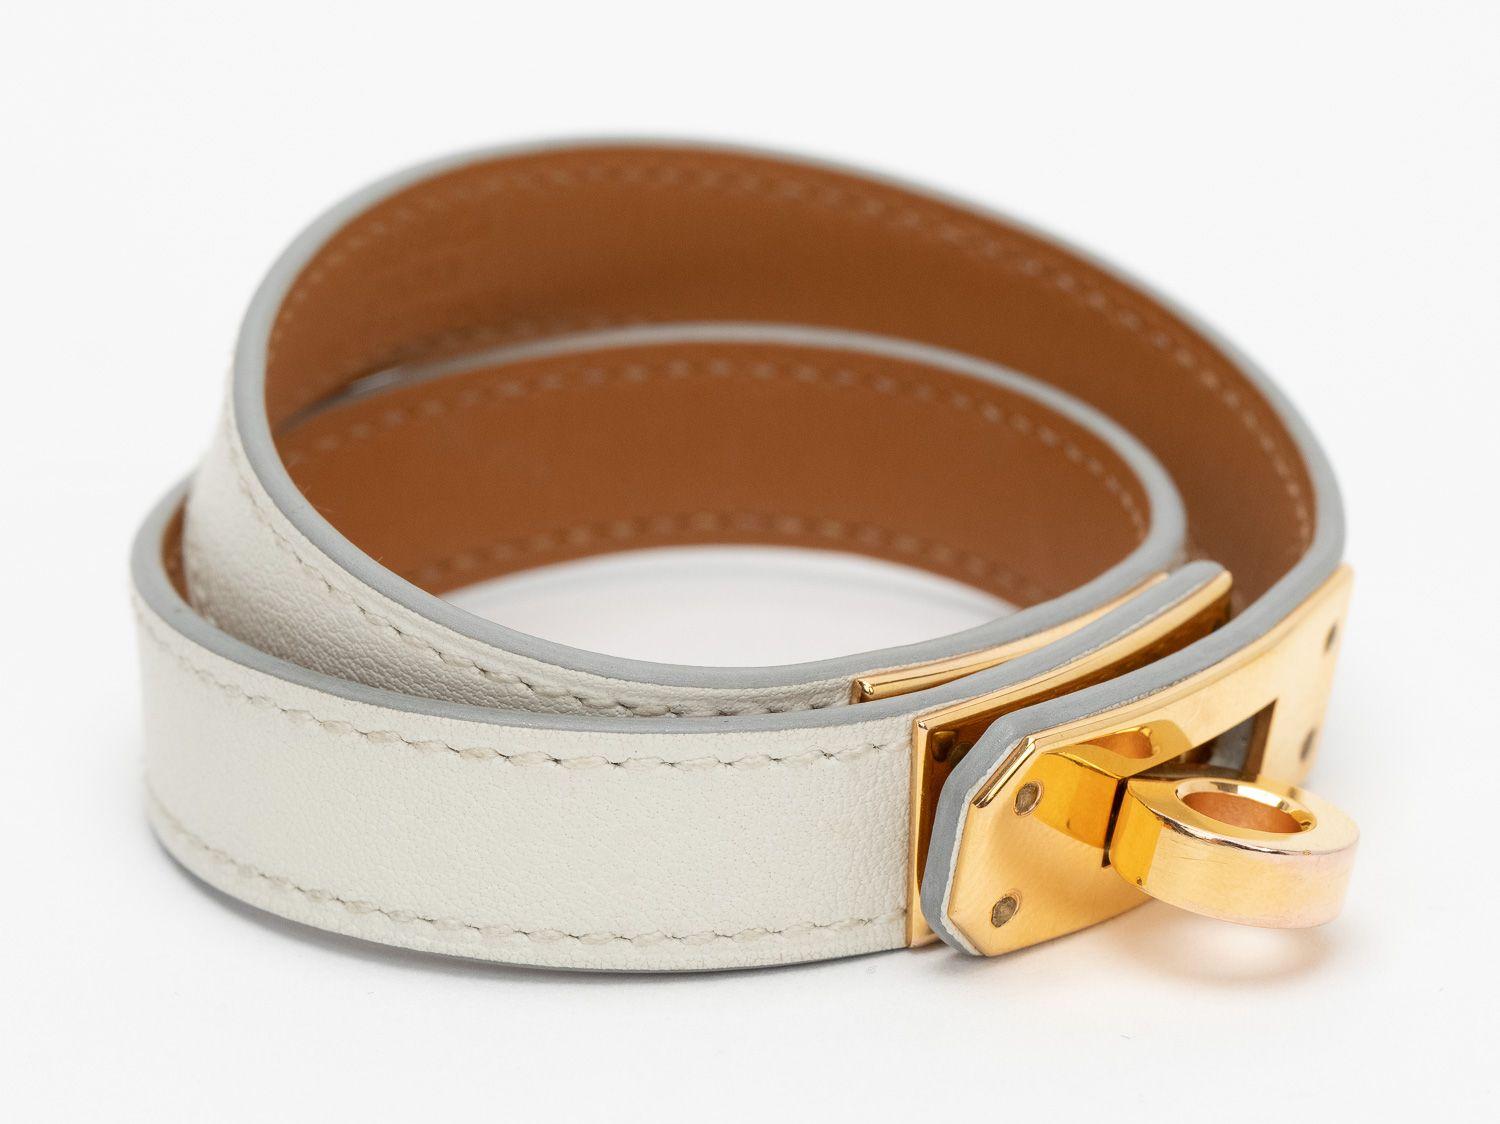 Hermès Kelly Double Tour Armband in der Farbe nata. Weißes Kalbsleder und goldene Beschläge. Der Datumsstempel zeigt ein C, Größe klein. Wird mit einem Samtetui geliefert.